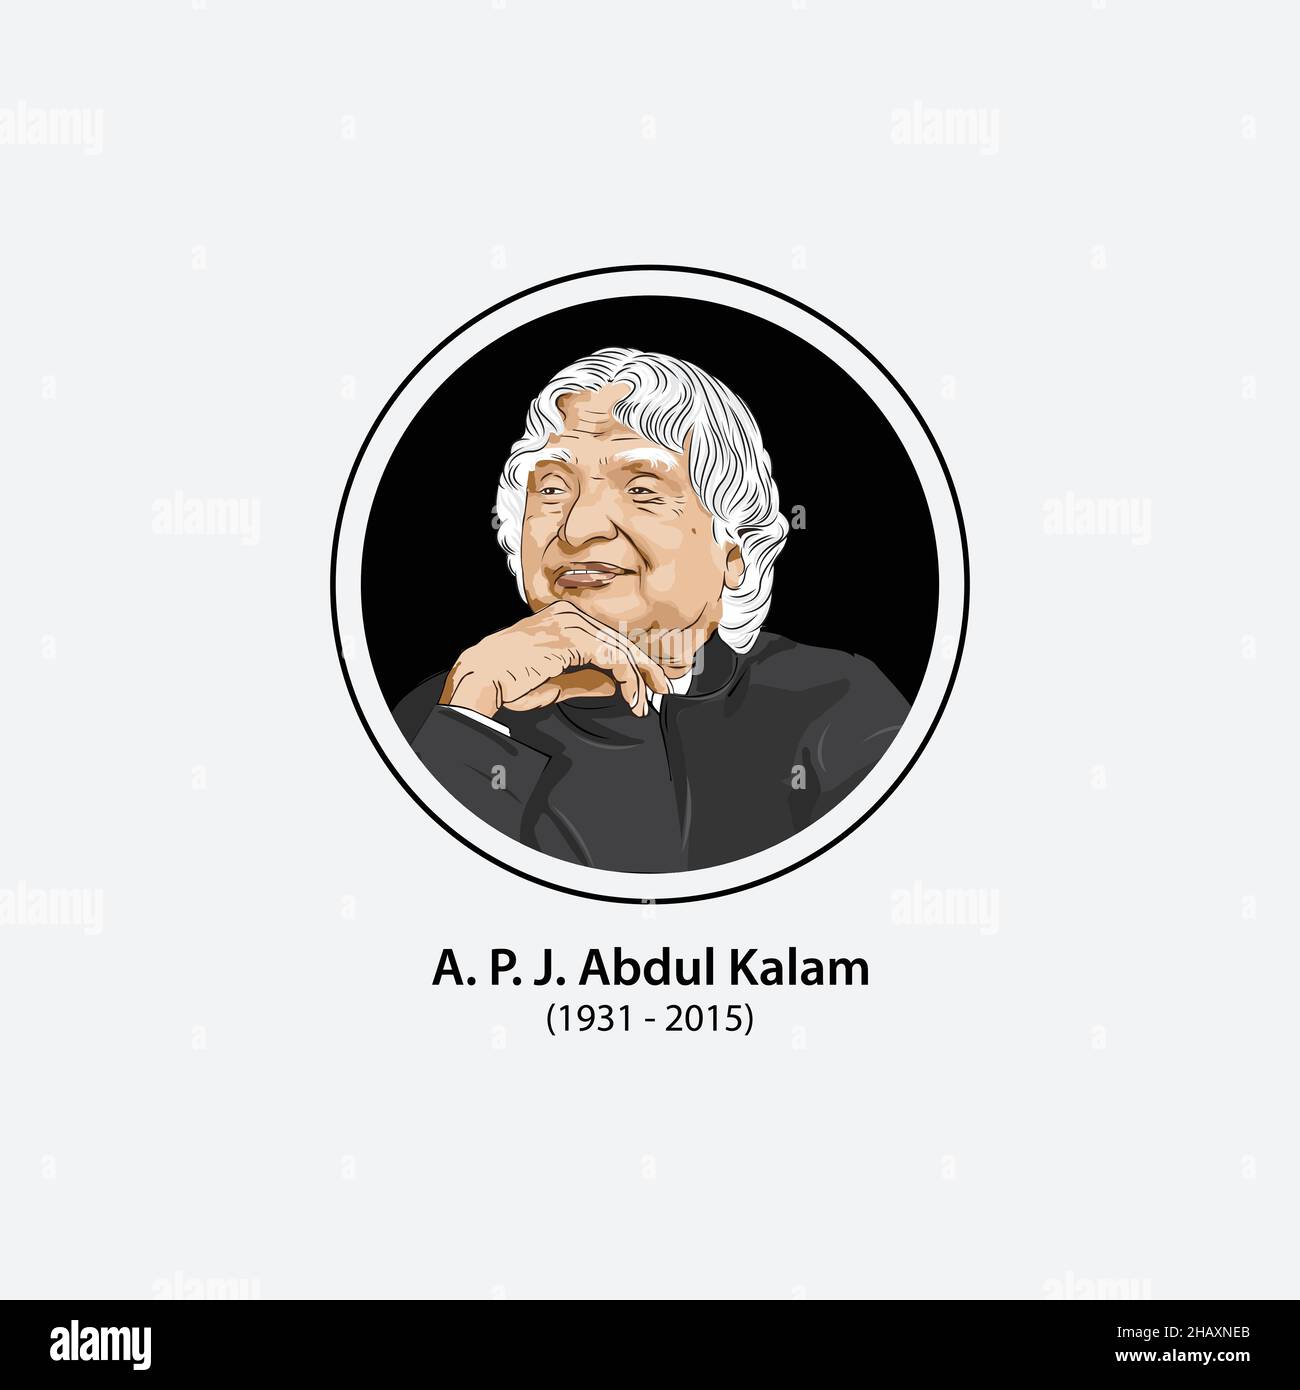 Avul Pakir Jainulabdeen Abdul Kalam è stato uno scienziato aerospaziale indiano che ha servito come presidente 11th dell'India dal 2002 al 2007. Illustrazione Vettoriale